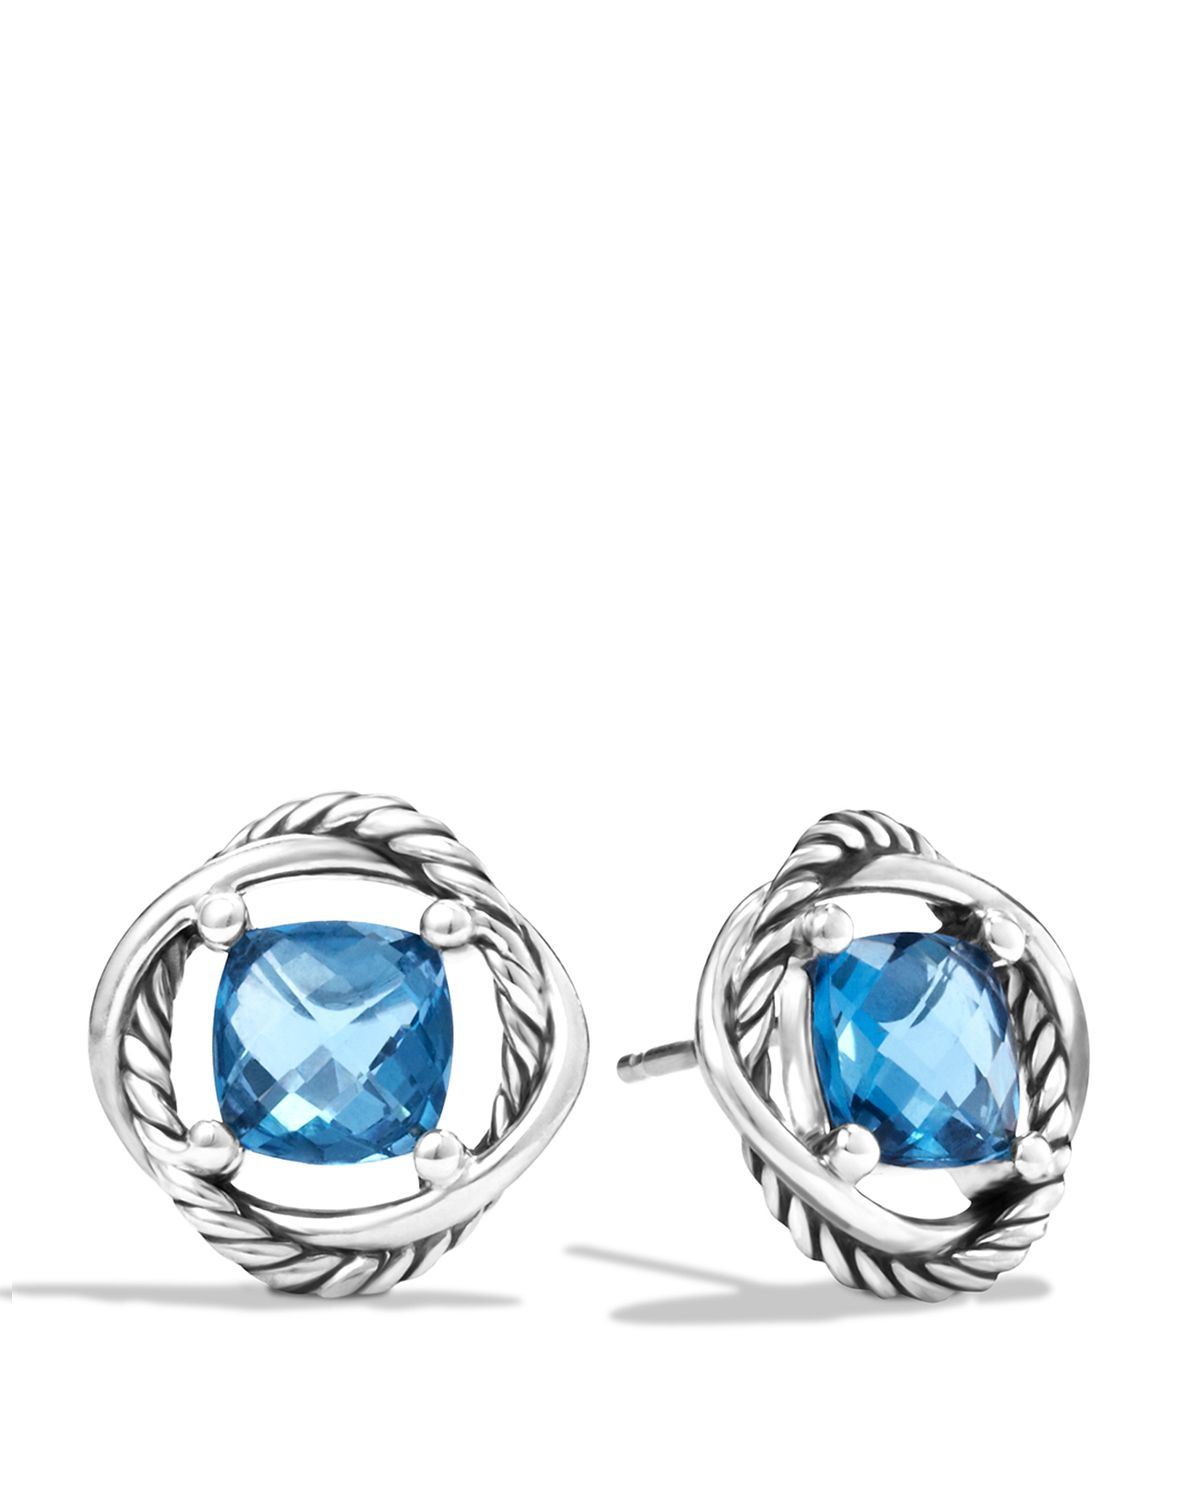 Lyst - David yurman Infinity Earrings With Hampton Blue Topaz in Blue